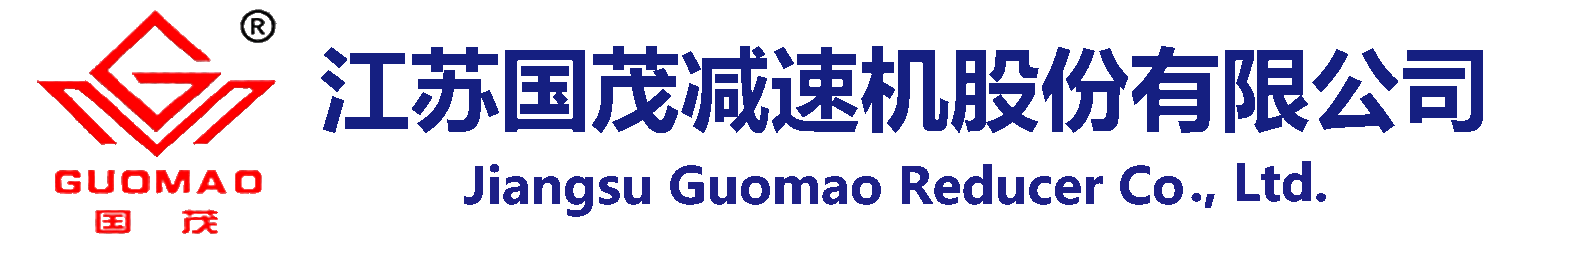 Jiangsu Guomao Reducer Co., Ltd.